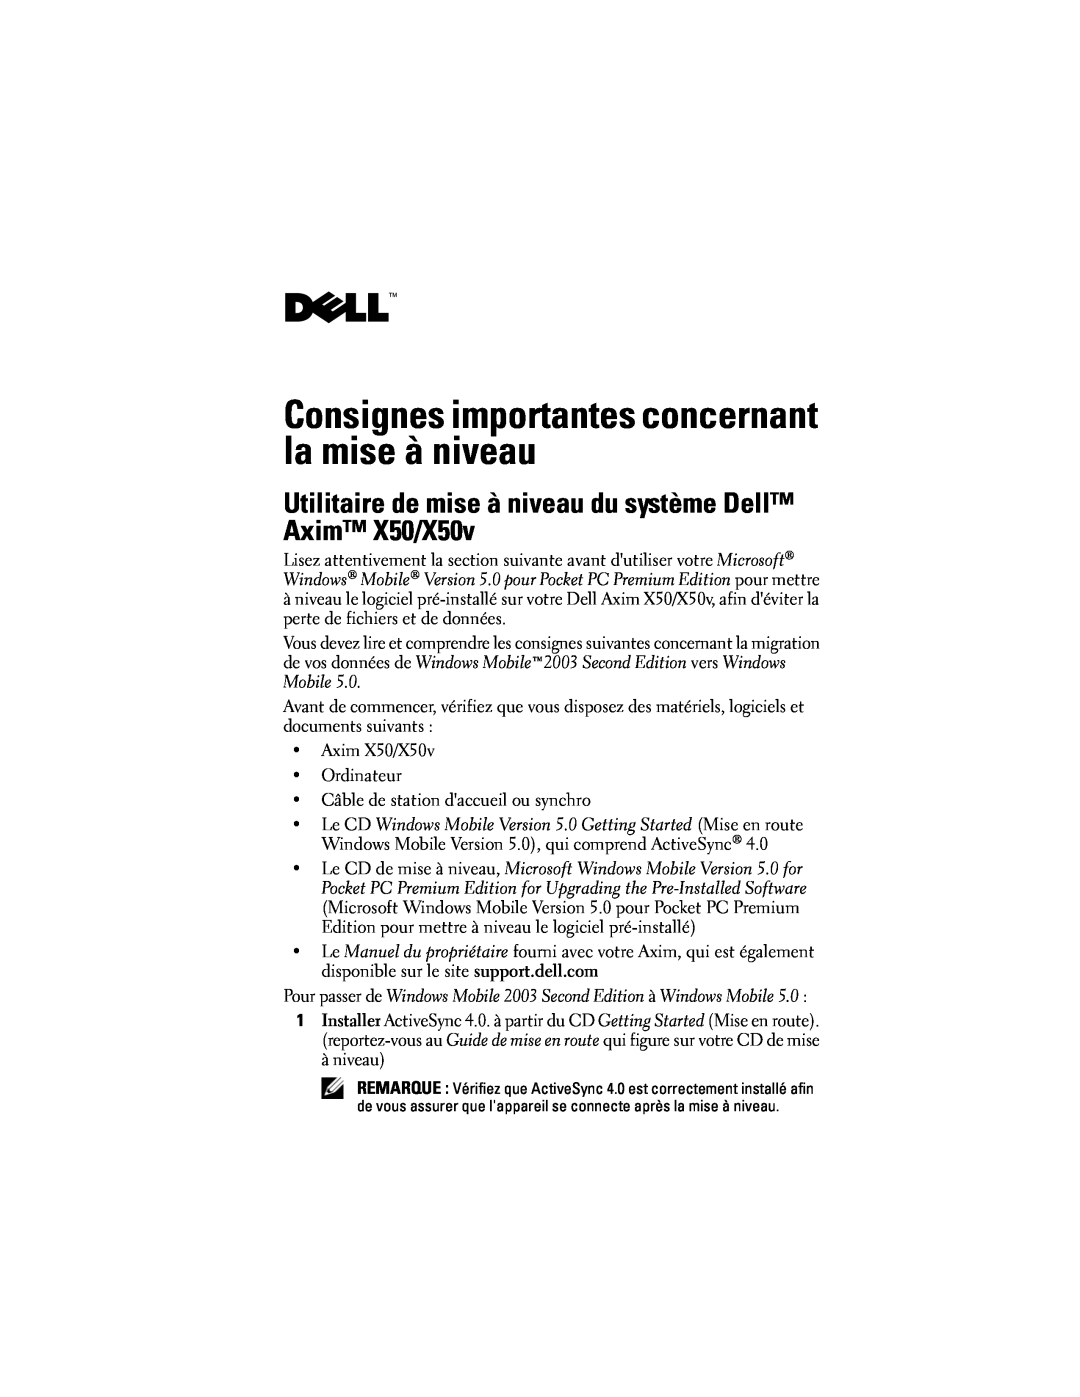 Dell Consignes importantes concernant la mise à niveau, Utilitaire de mise à niveau du système Dell Axim X50/X50v 